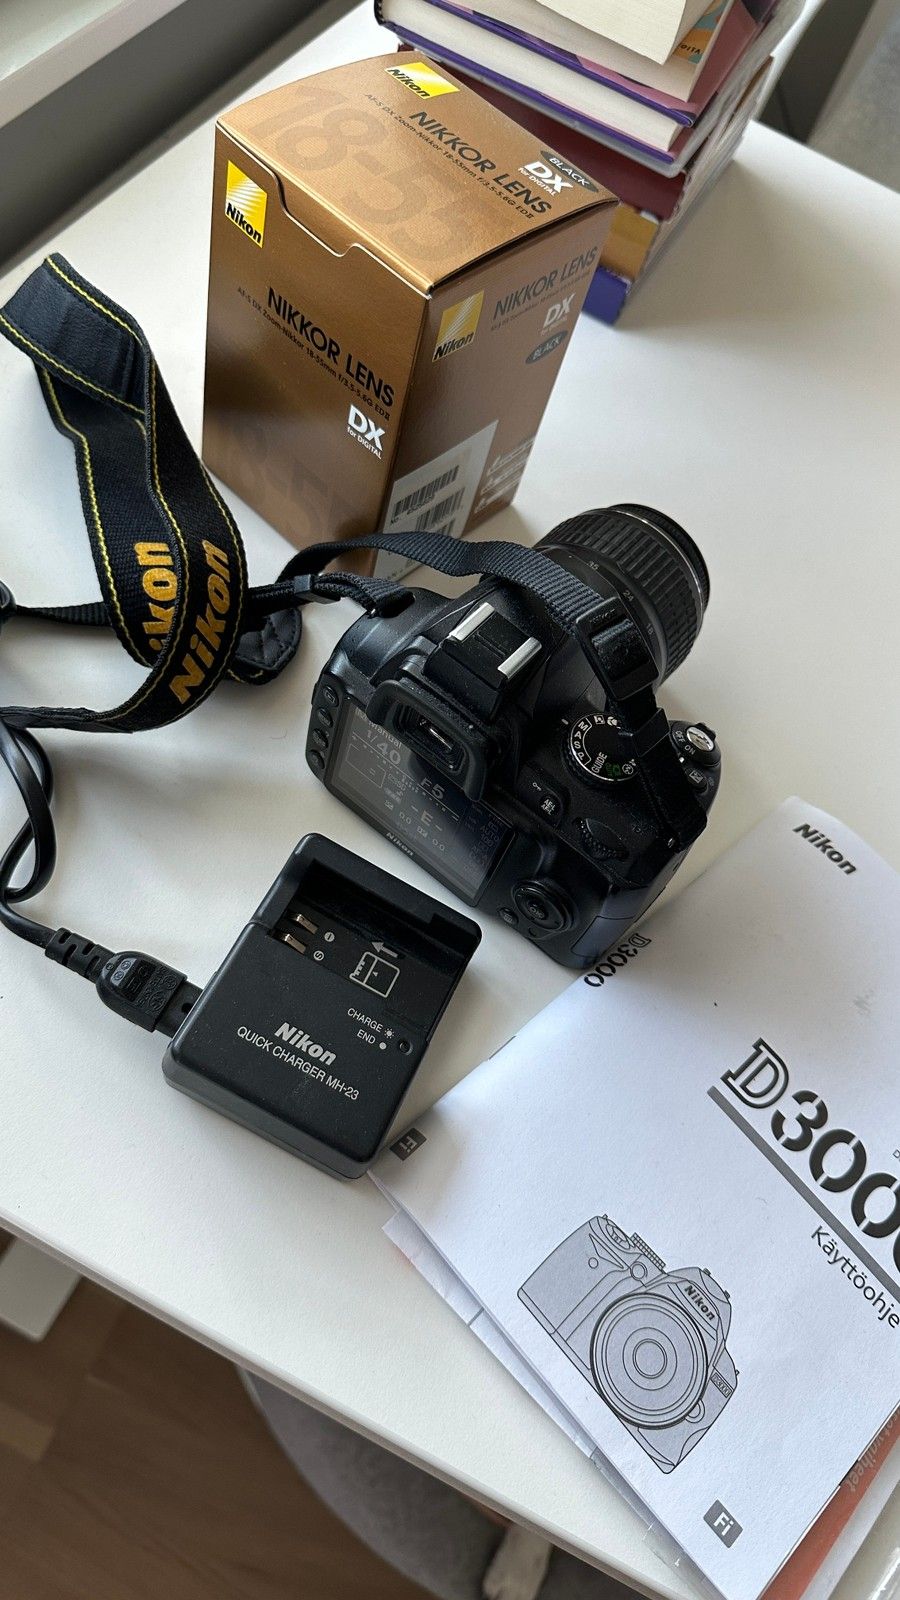 Nikon D3000 + Nikkor AF-S DX 18-55mm 3.5-5.6